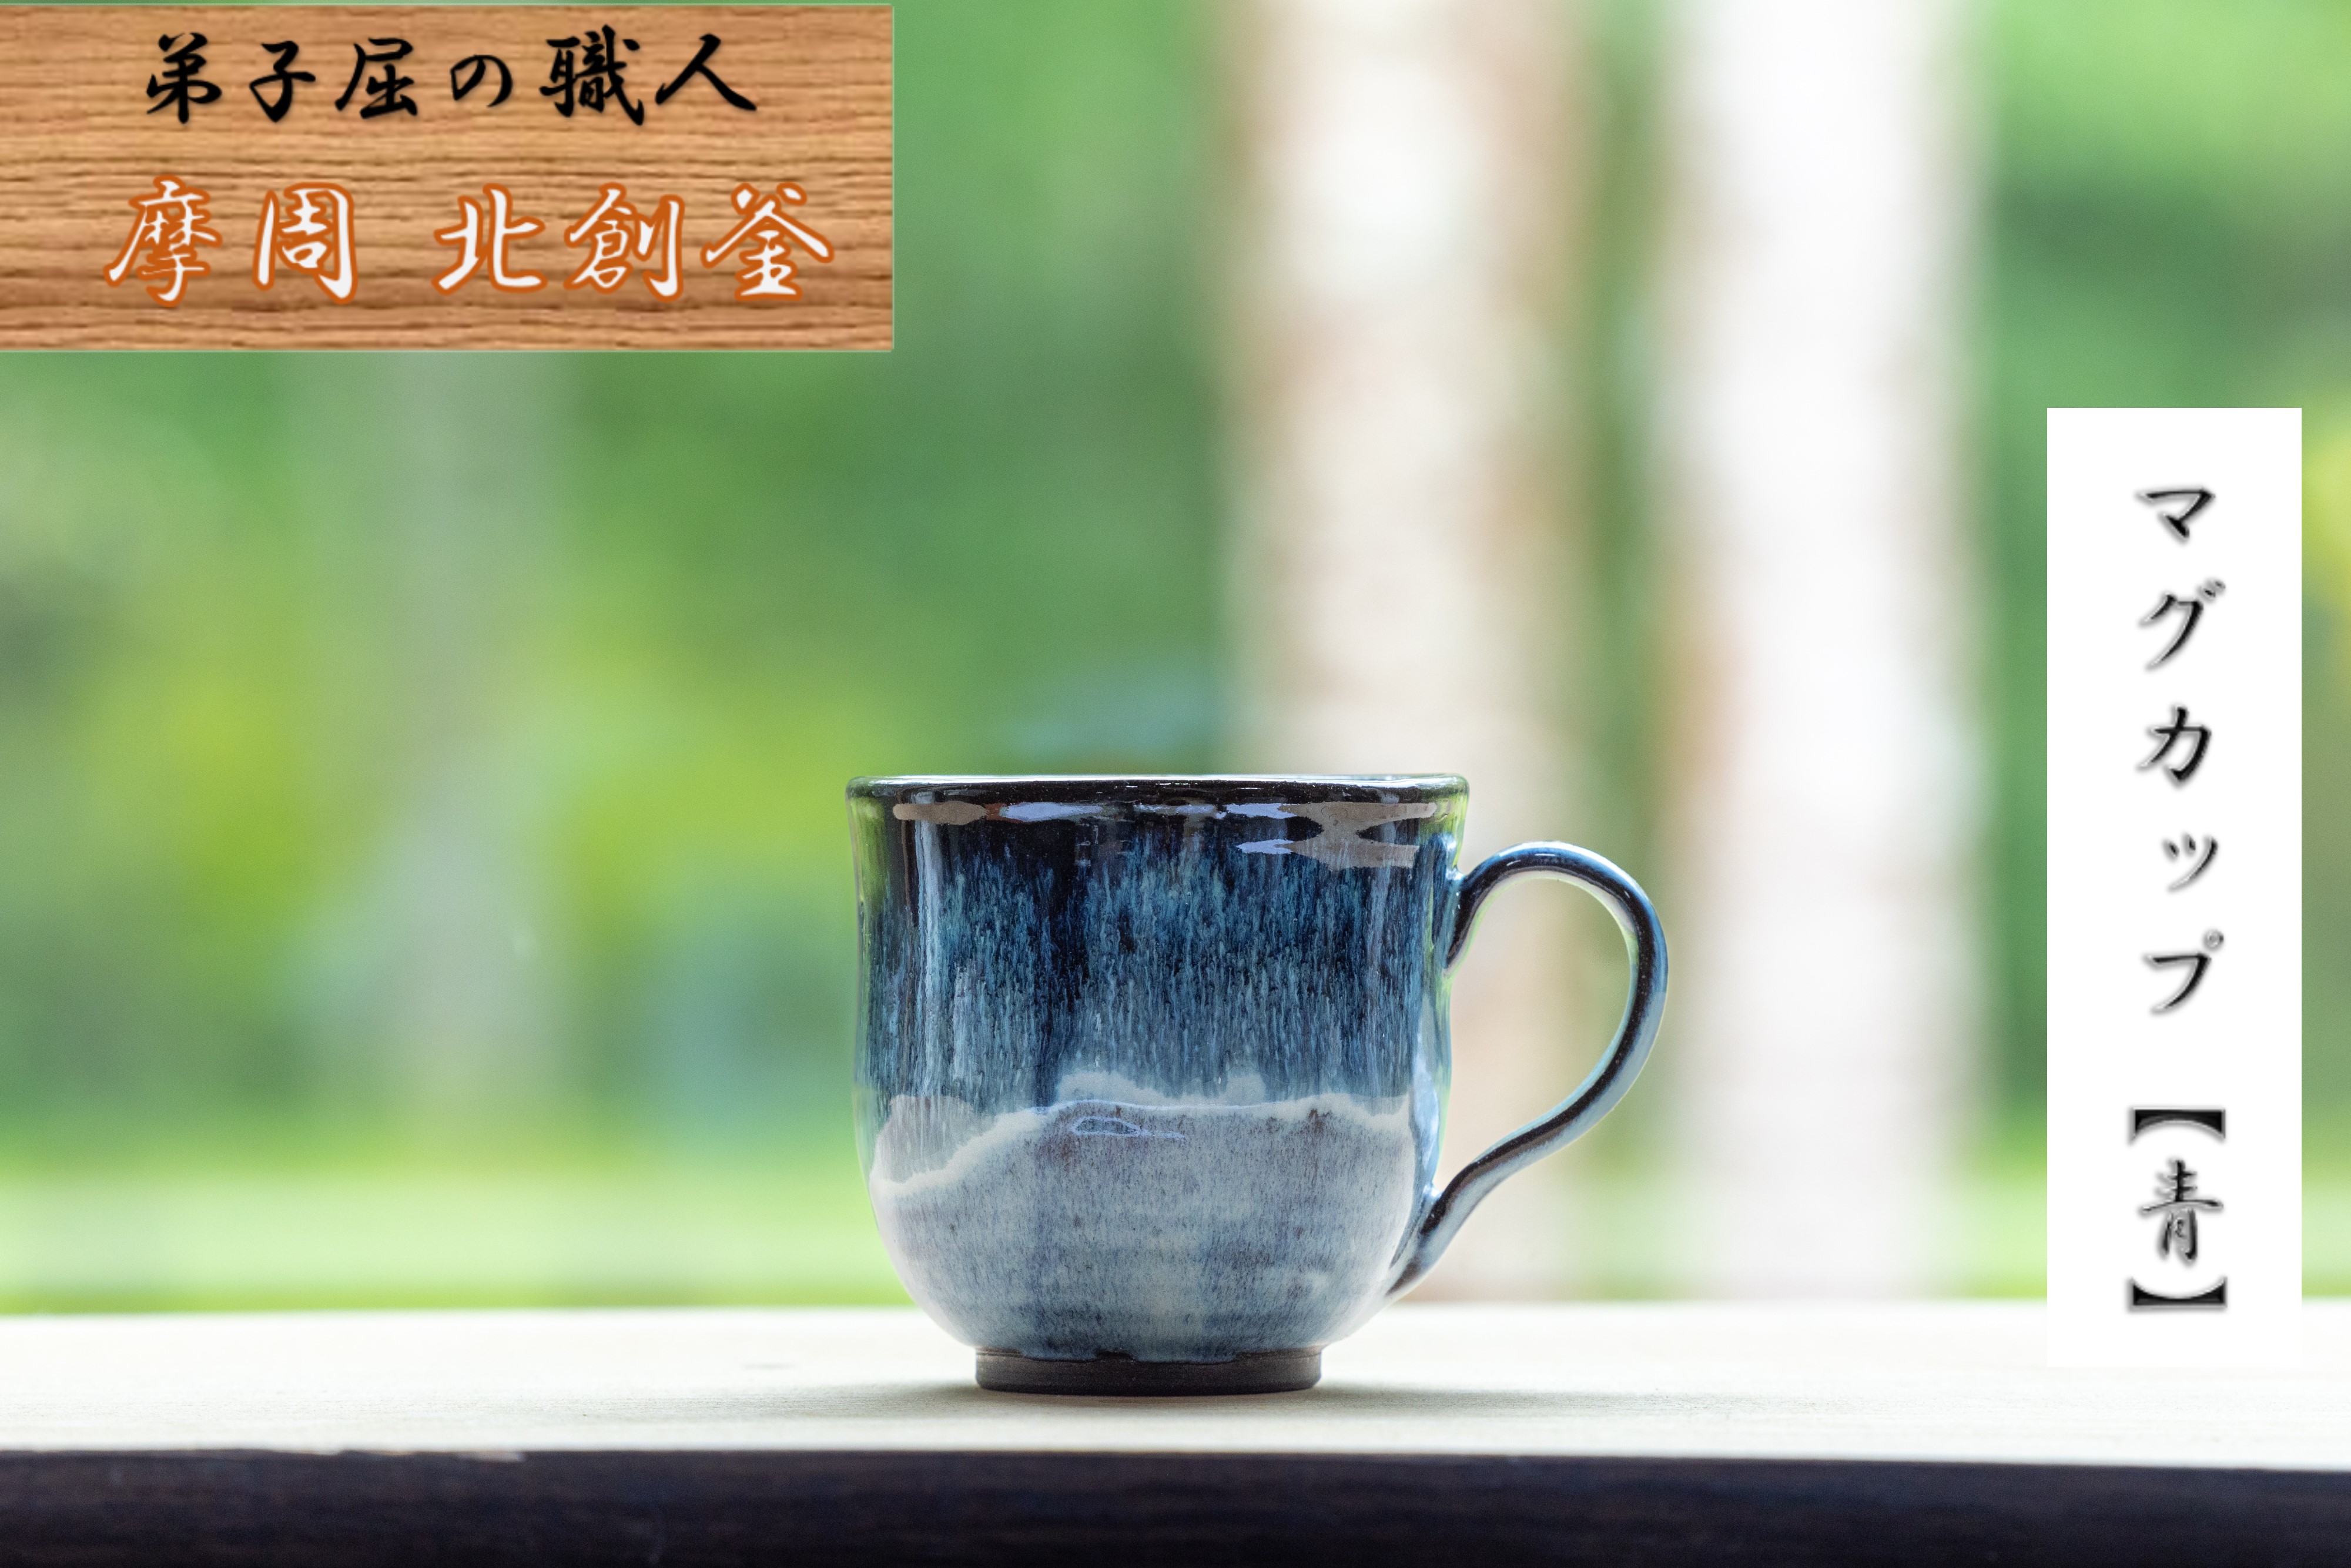 1611.陶芸品 摩周 北創窯 マグカップ（丸底・一色）【青】